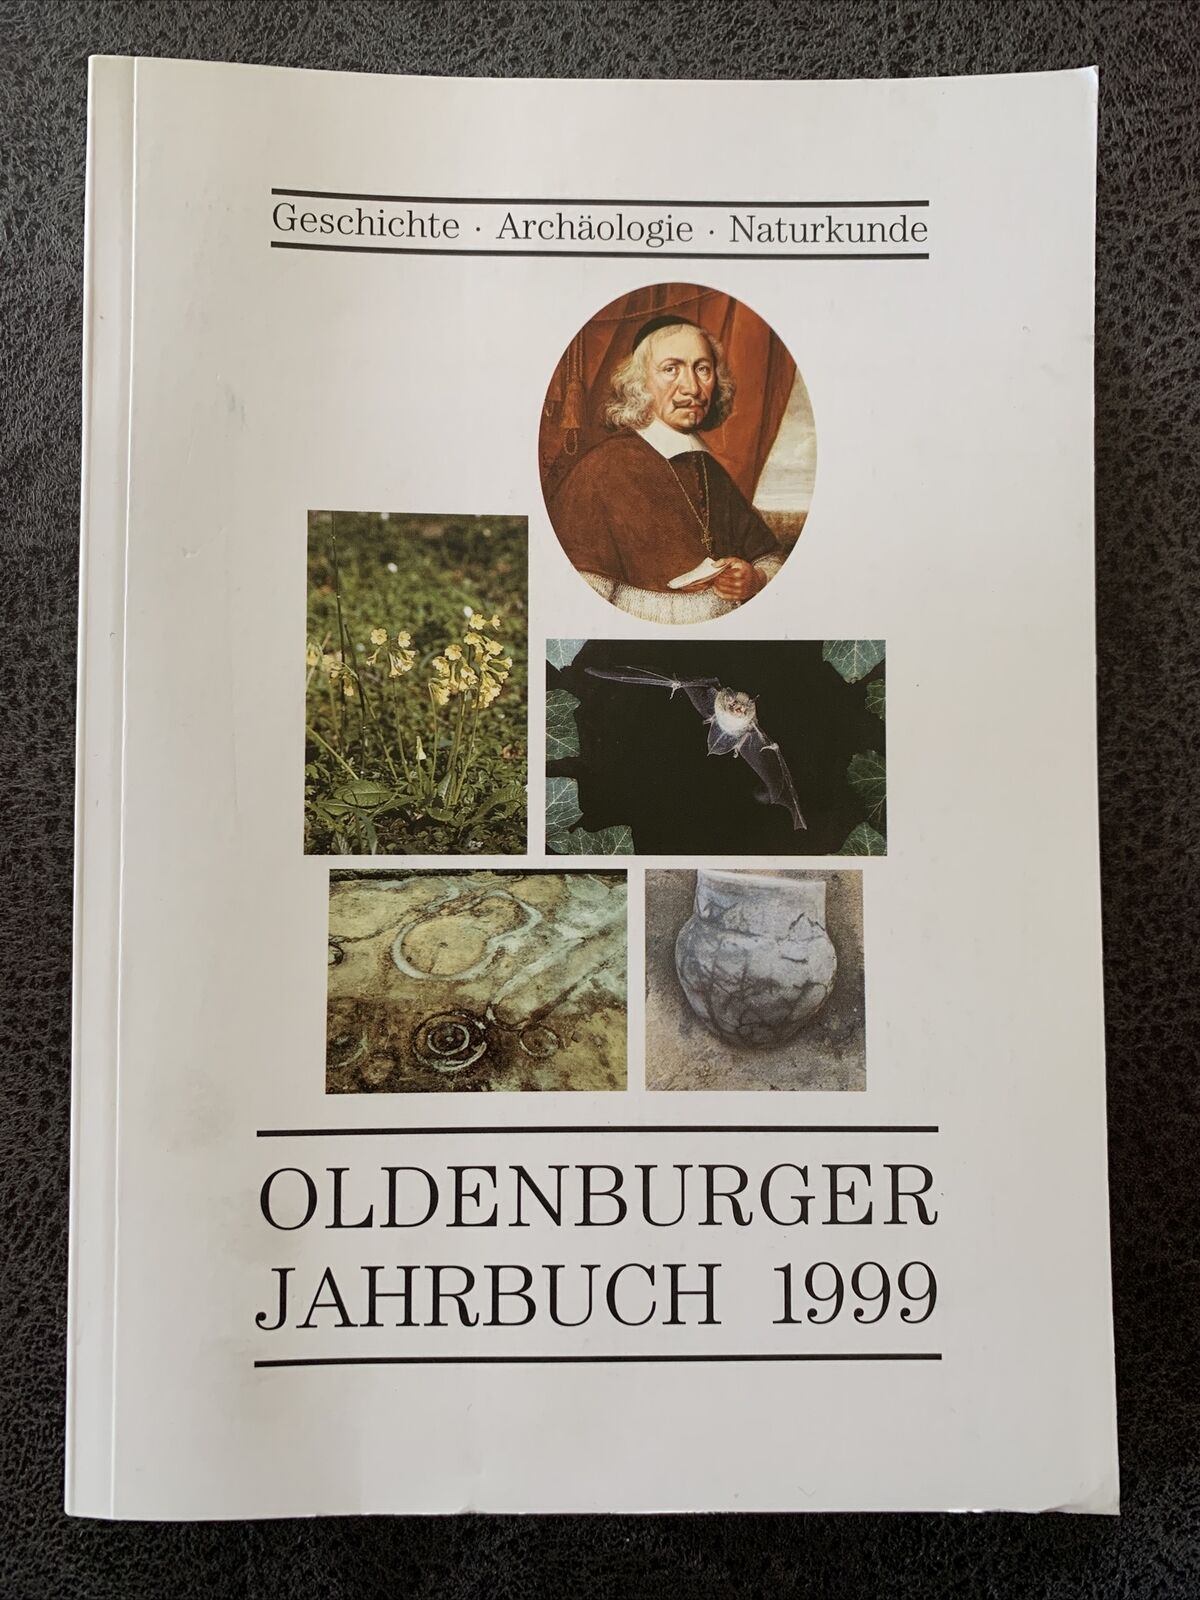 Oldenburger Jahrbuch 1999, Geschichte - Archäologie - Naturkunde Band 99